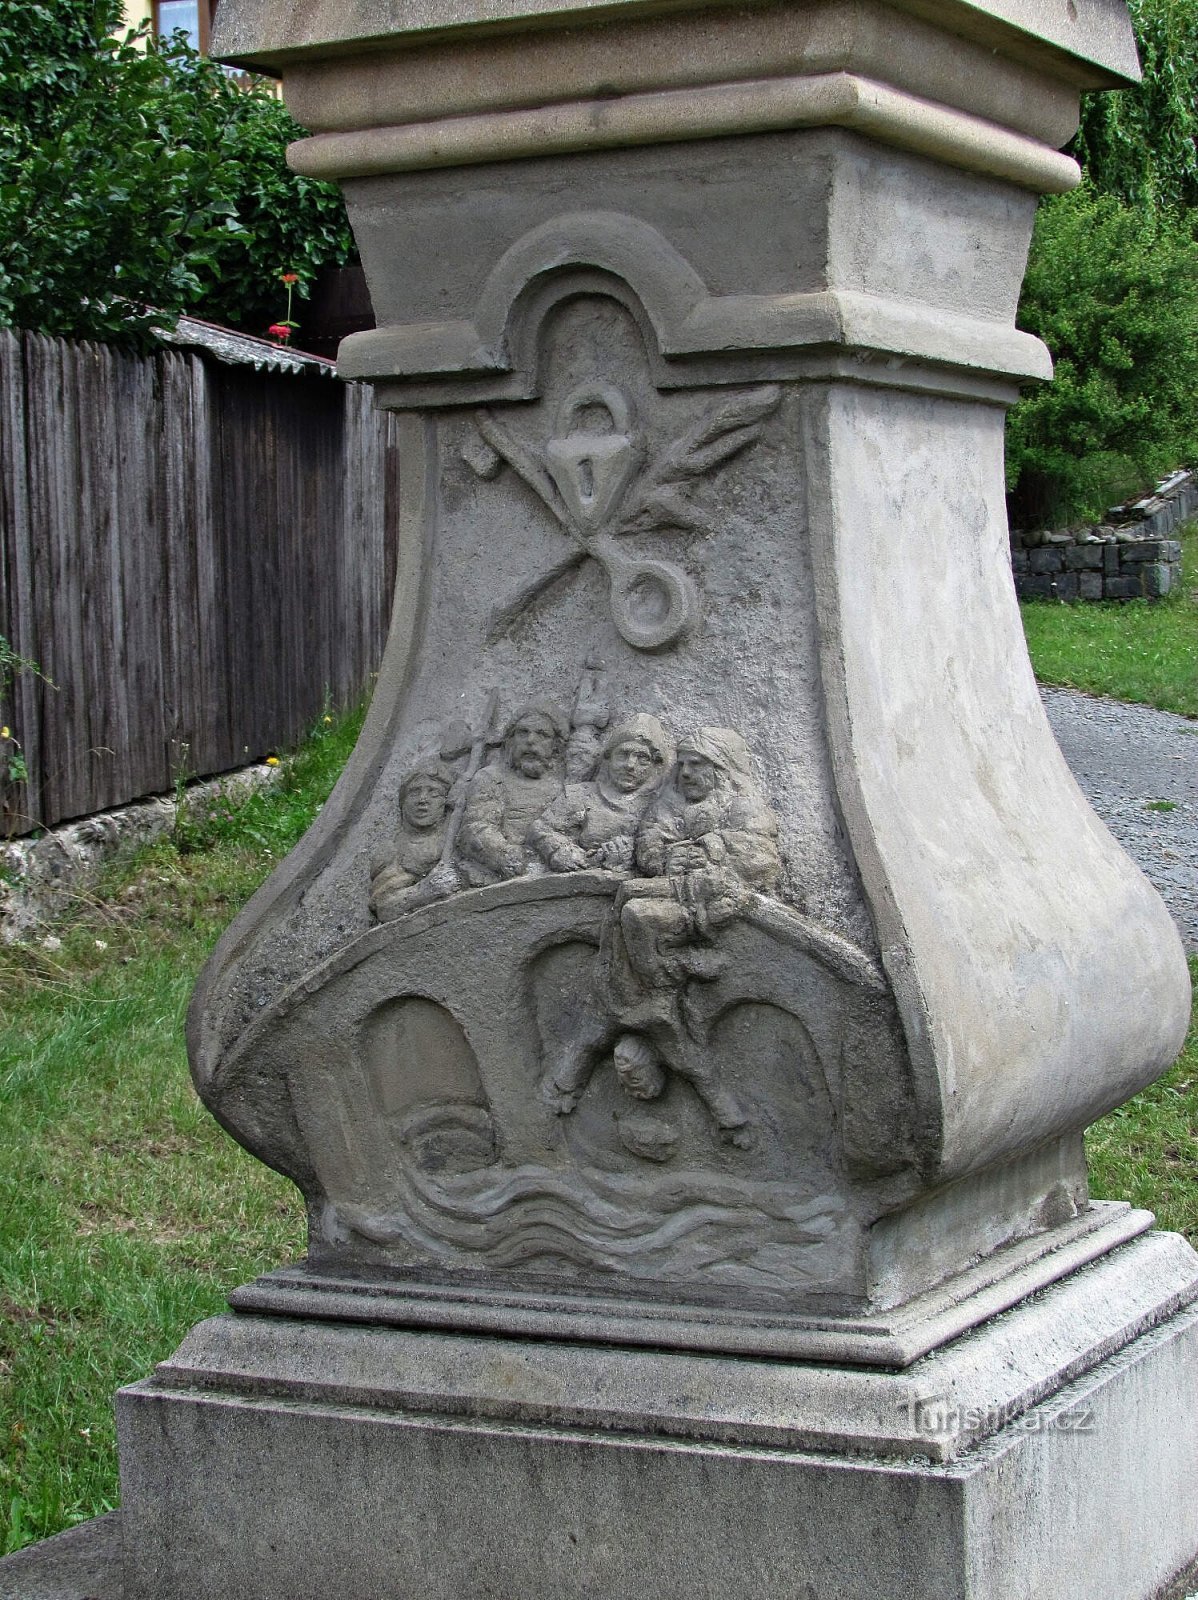 Týn nad Bečvou - tượng Thánh John of Nepomuk